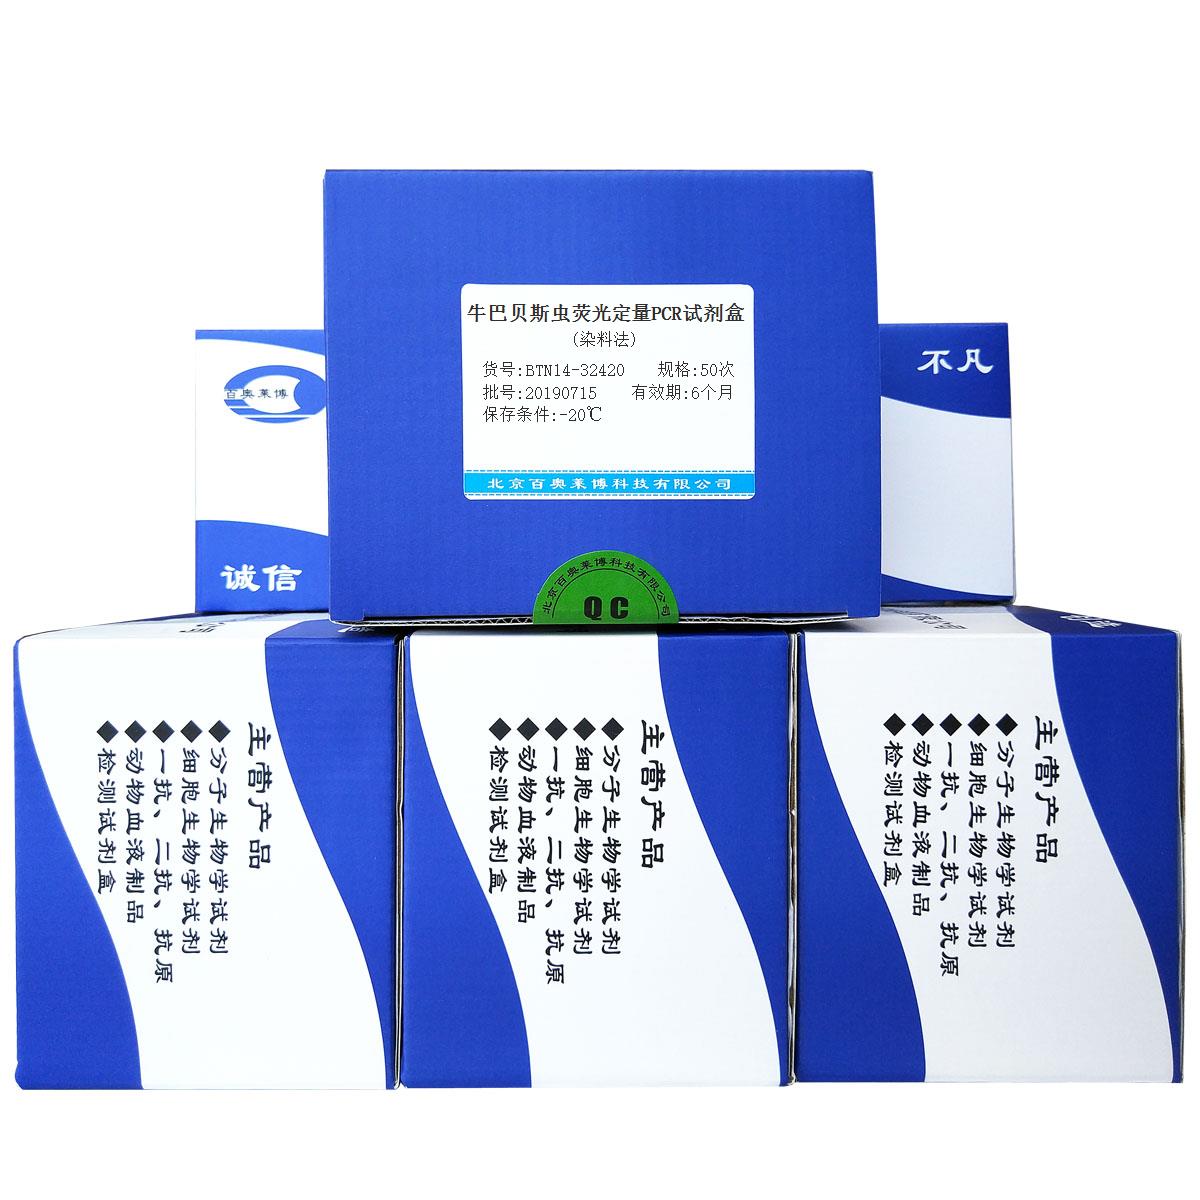 牛巴贝斯虫荧光定量PCR试剂盒(染料法)